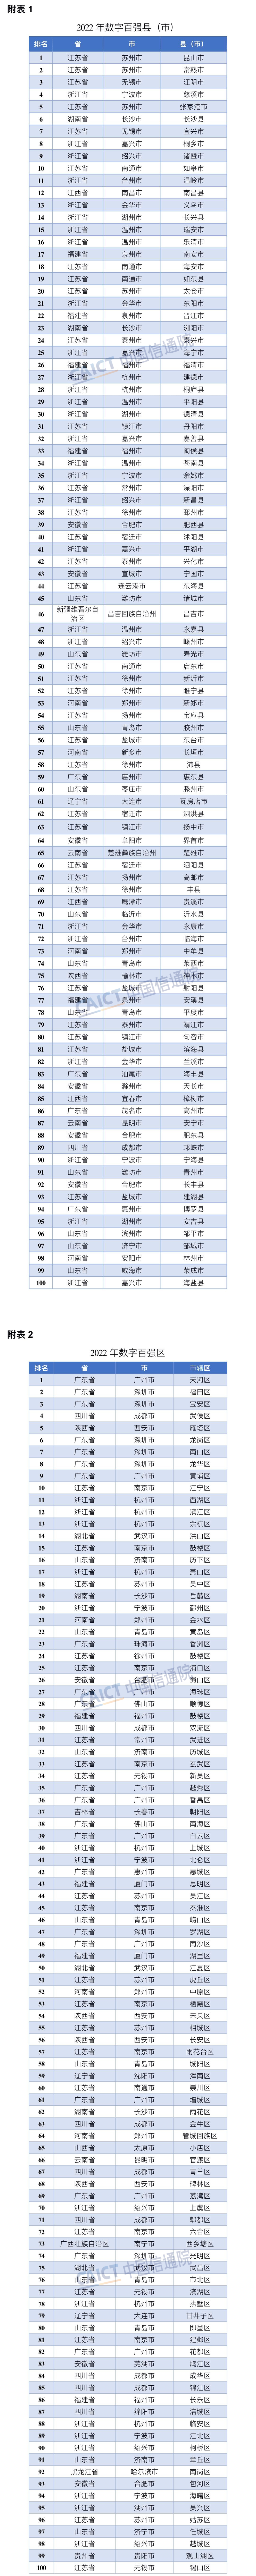 中国信通院县域经济课题组：中国县域数字化发展竞争力呈六大特征